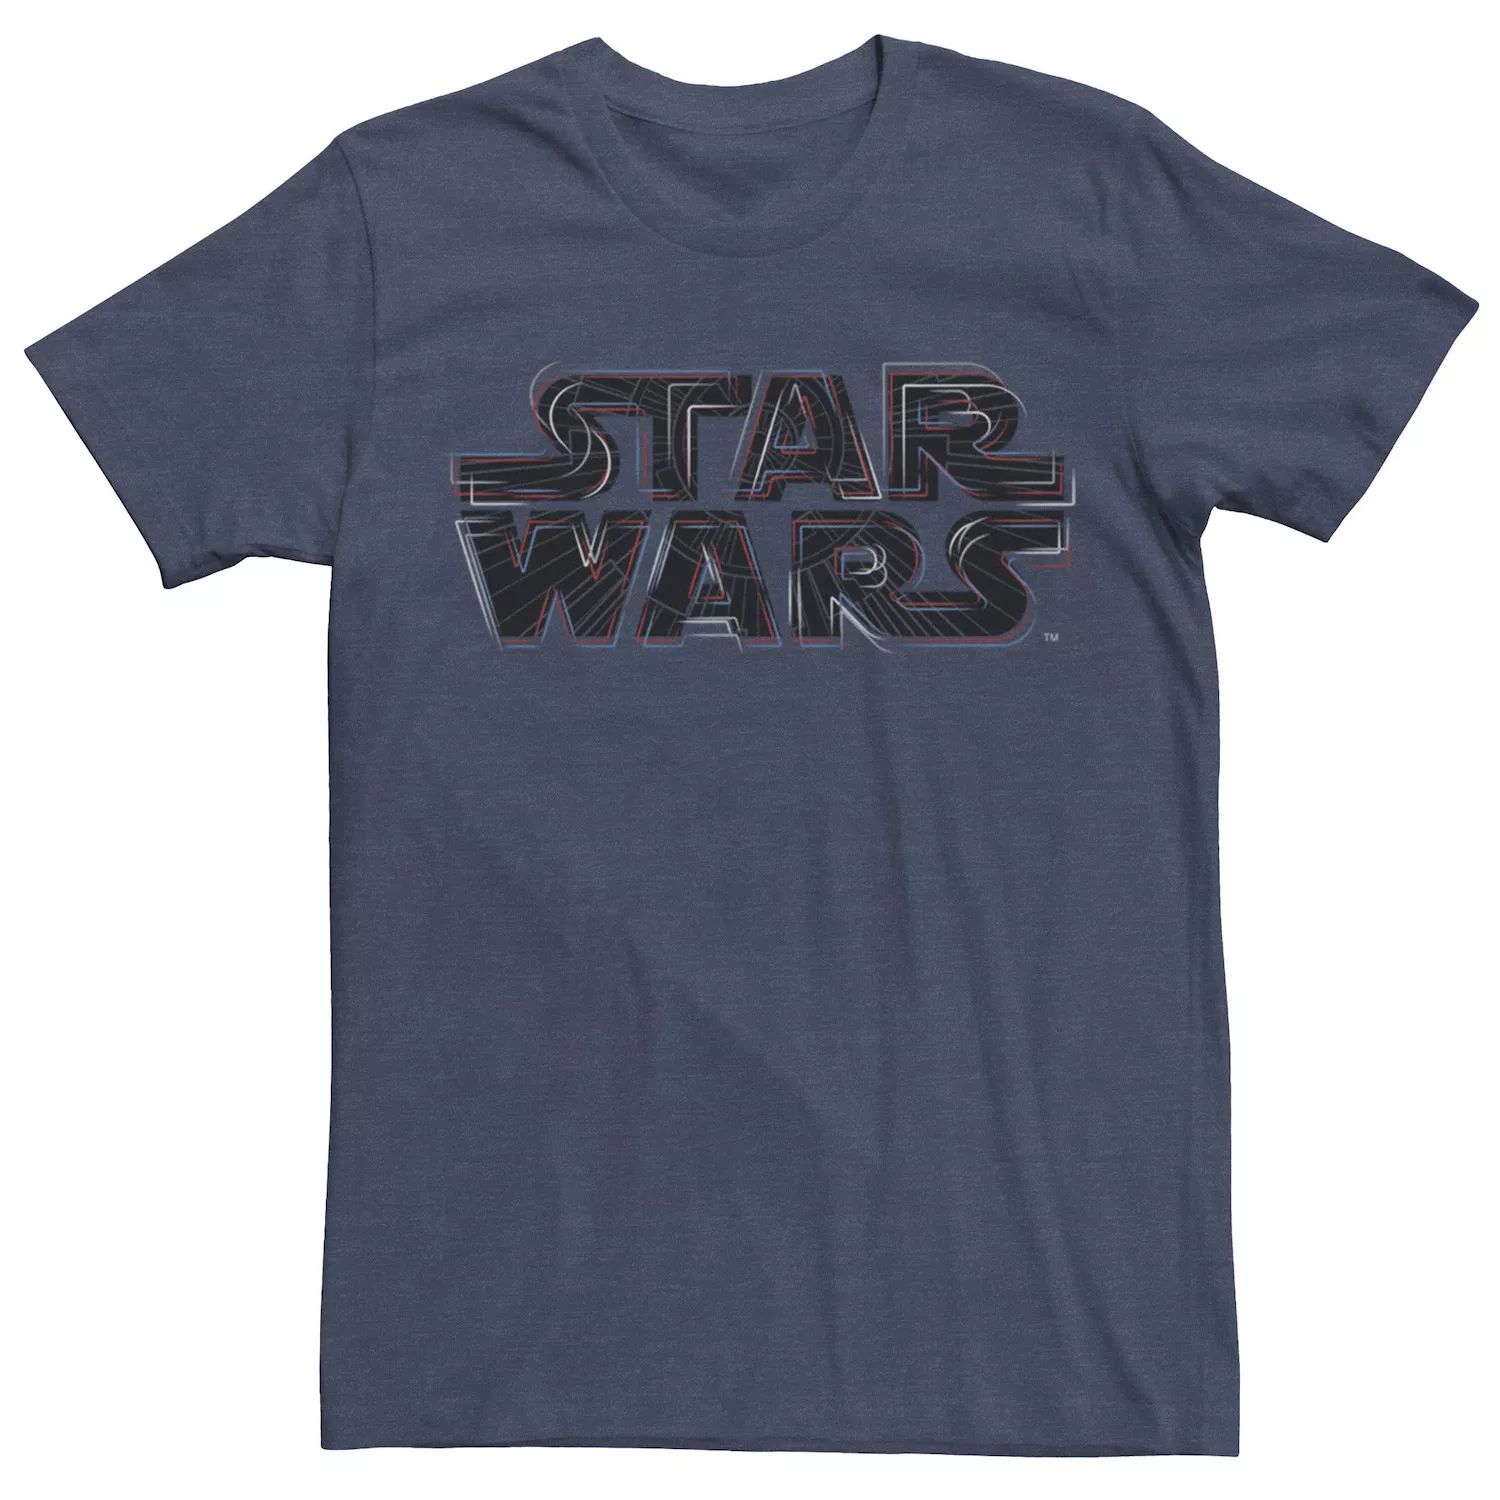 Мужская футболка с логотипом Star Wars Rogue One Off Course мужская красная футболка с логотипом rogue one rogue one star wars